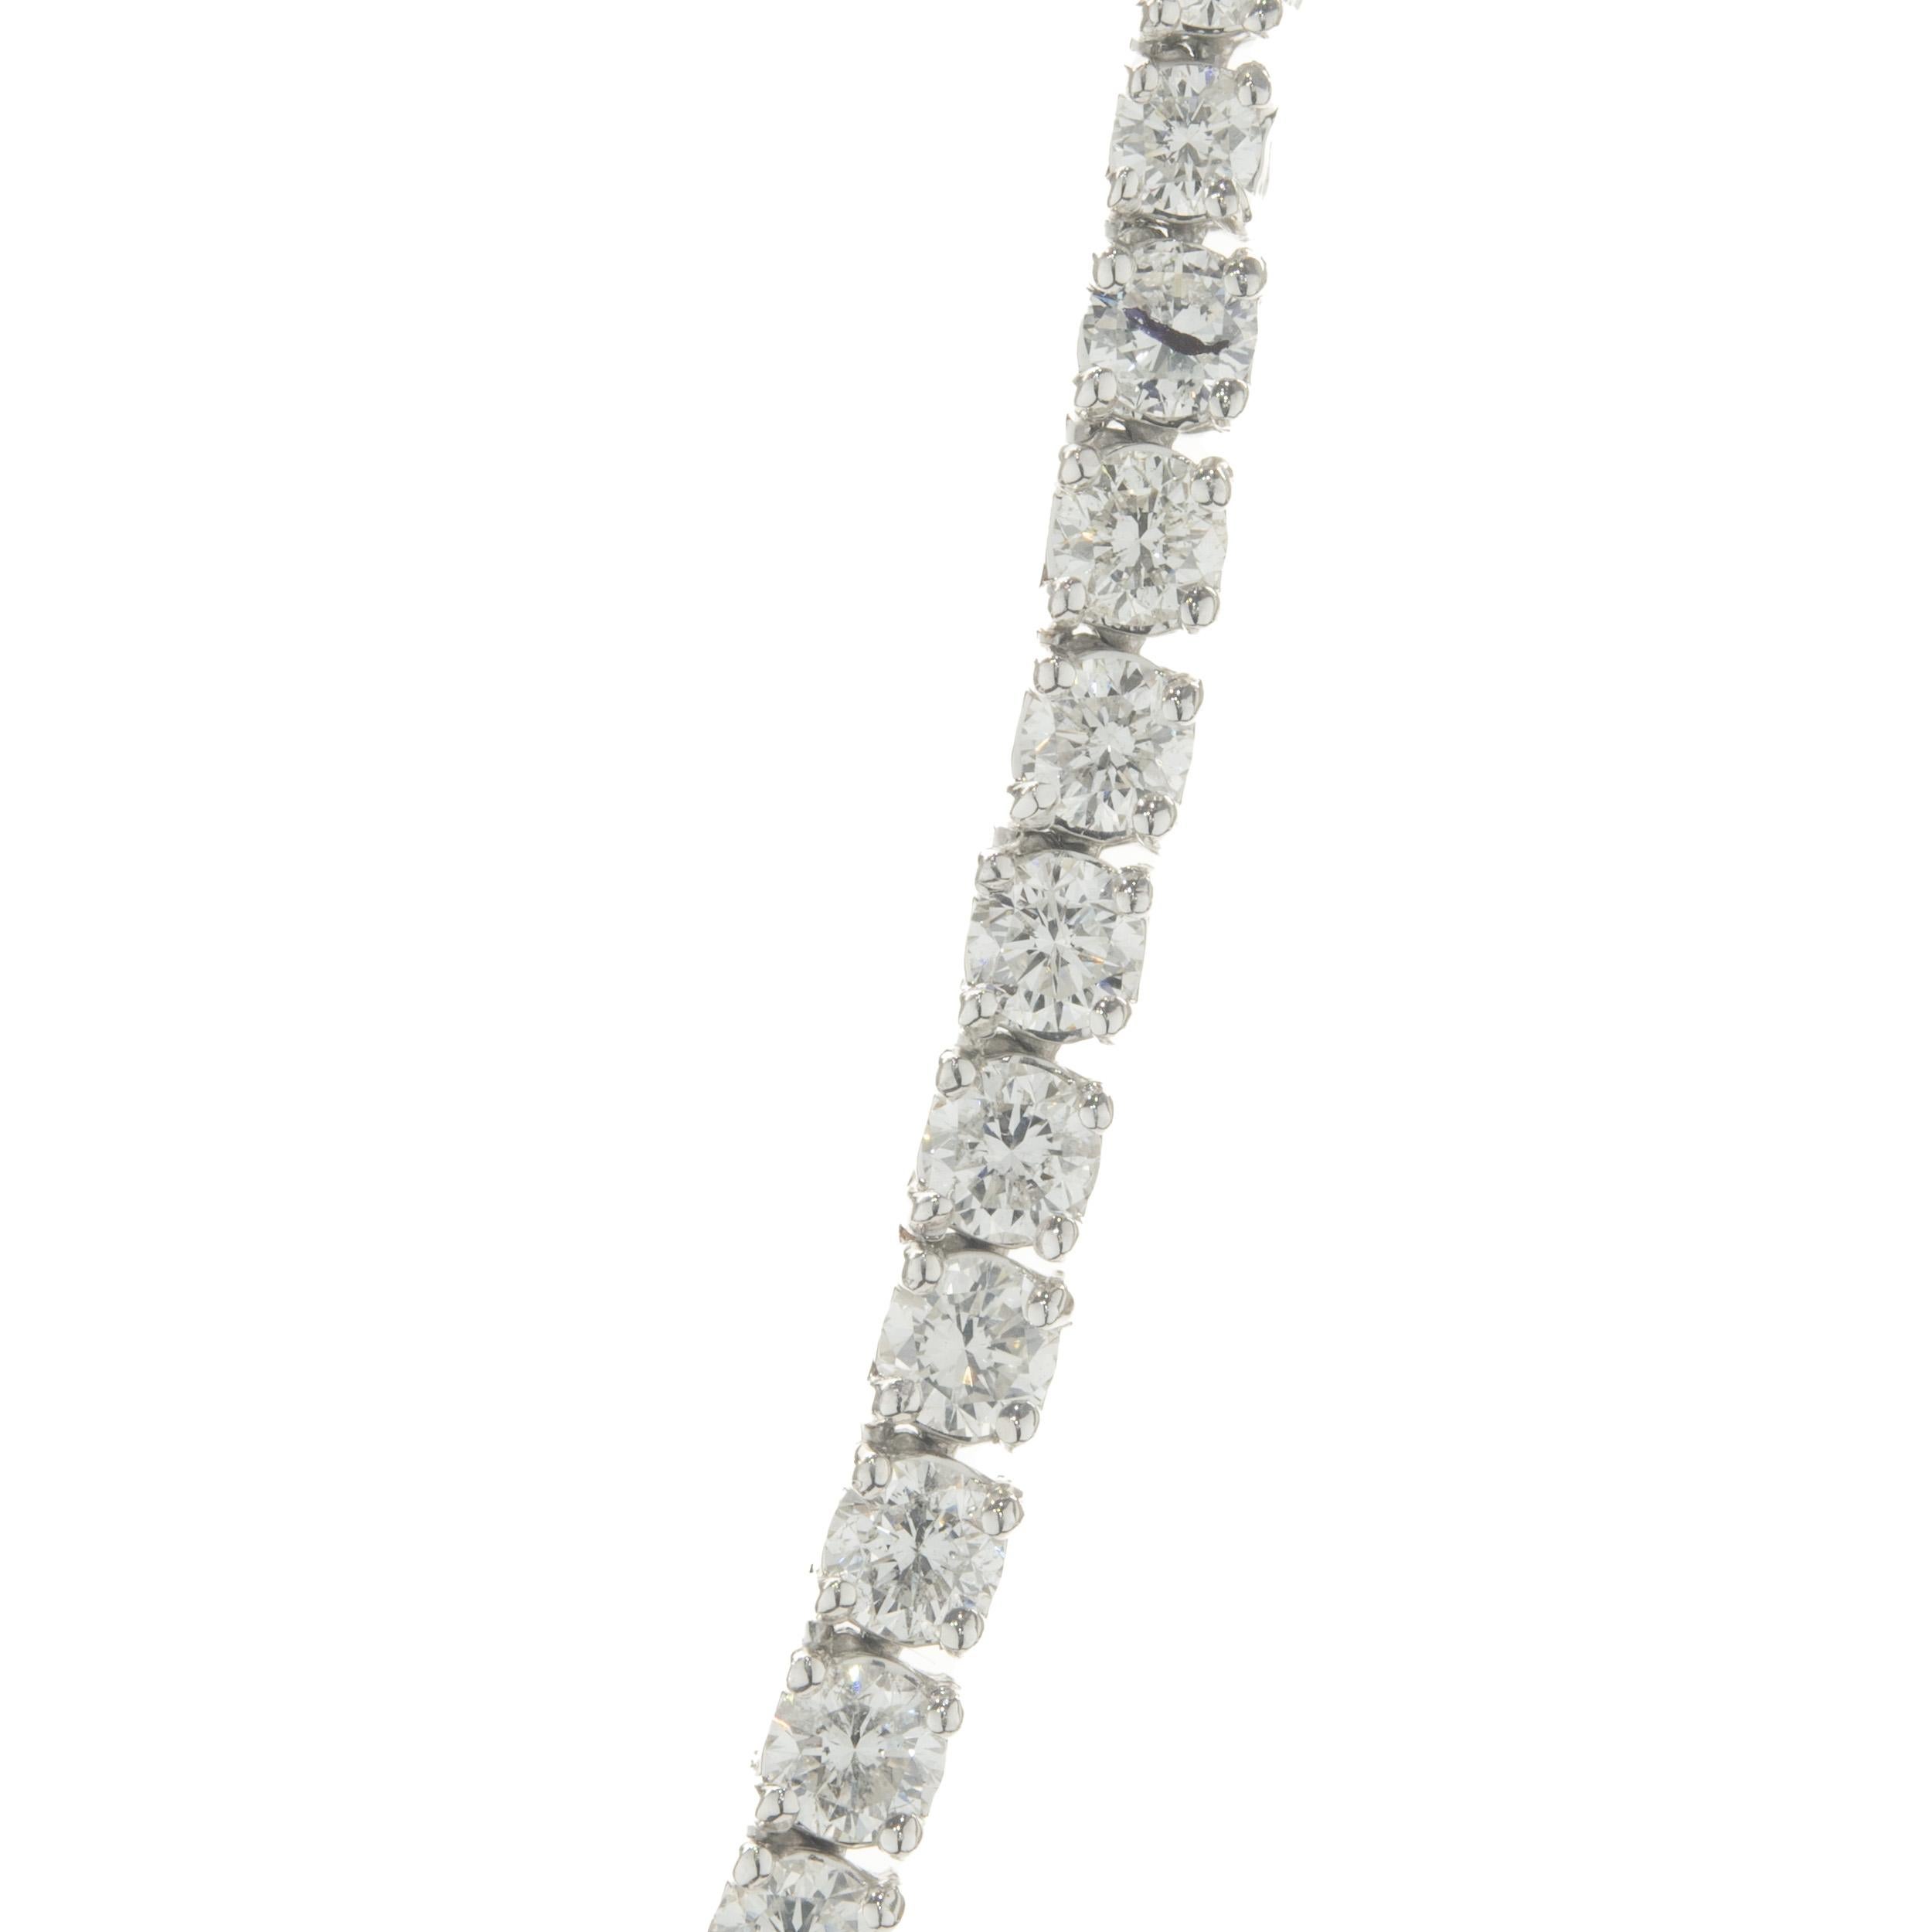 Designer : design personnalisé
Matériau : Or blanc 14K
Diamant : 107 diamants ronds de taille brillant = 10,39cttw
Couleur : G / H
Clarté : SI1
Dimensions : le collier mesure 15 pouces de long. 
Poids : 41,67 grammes